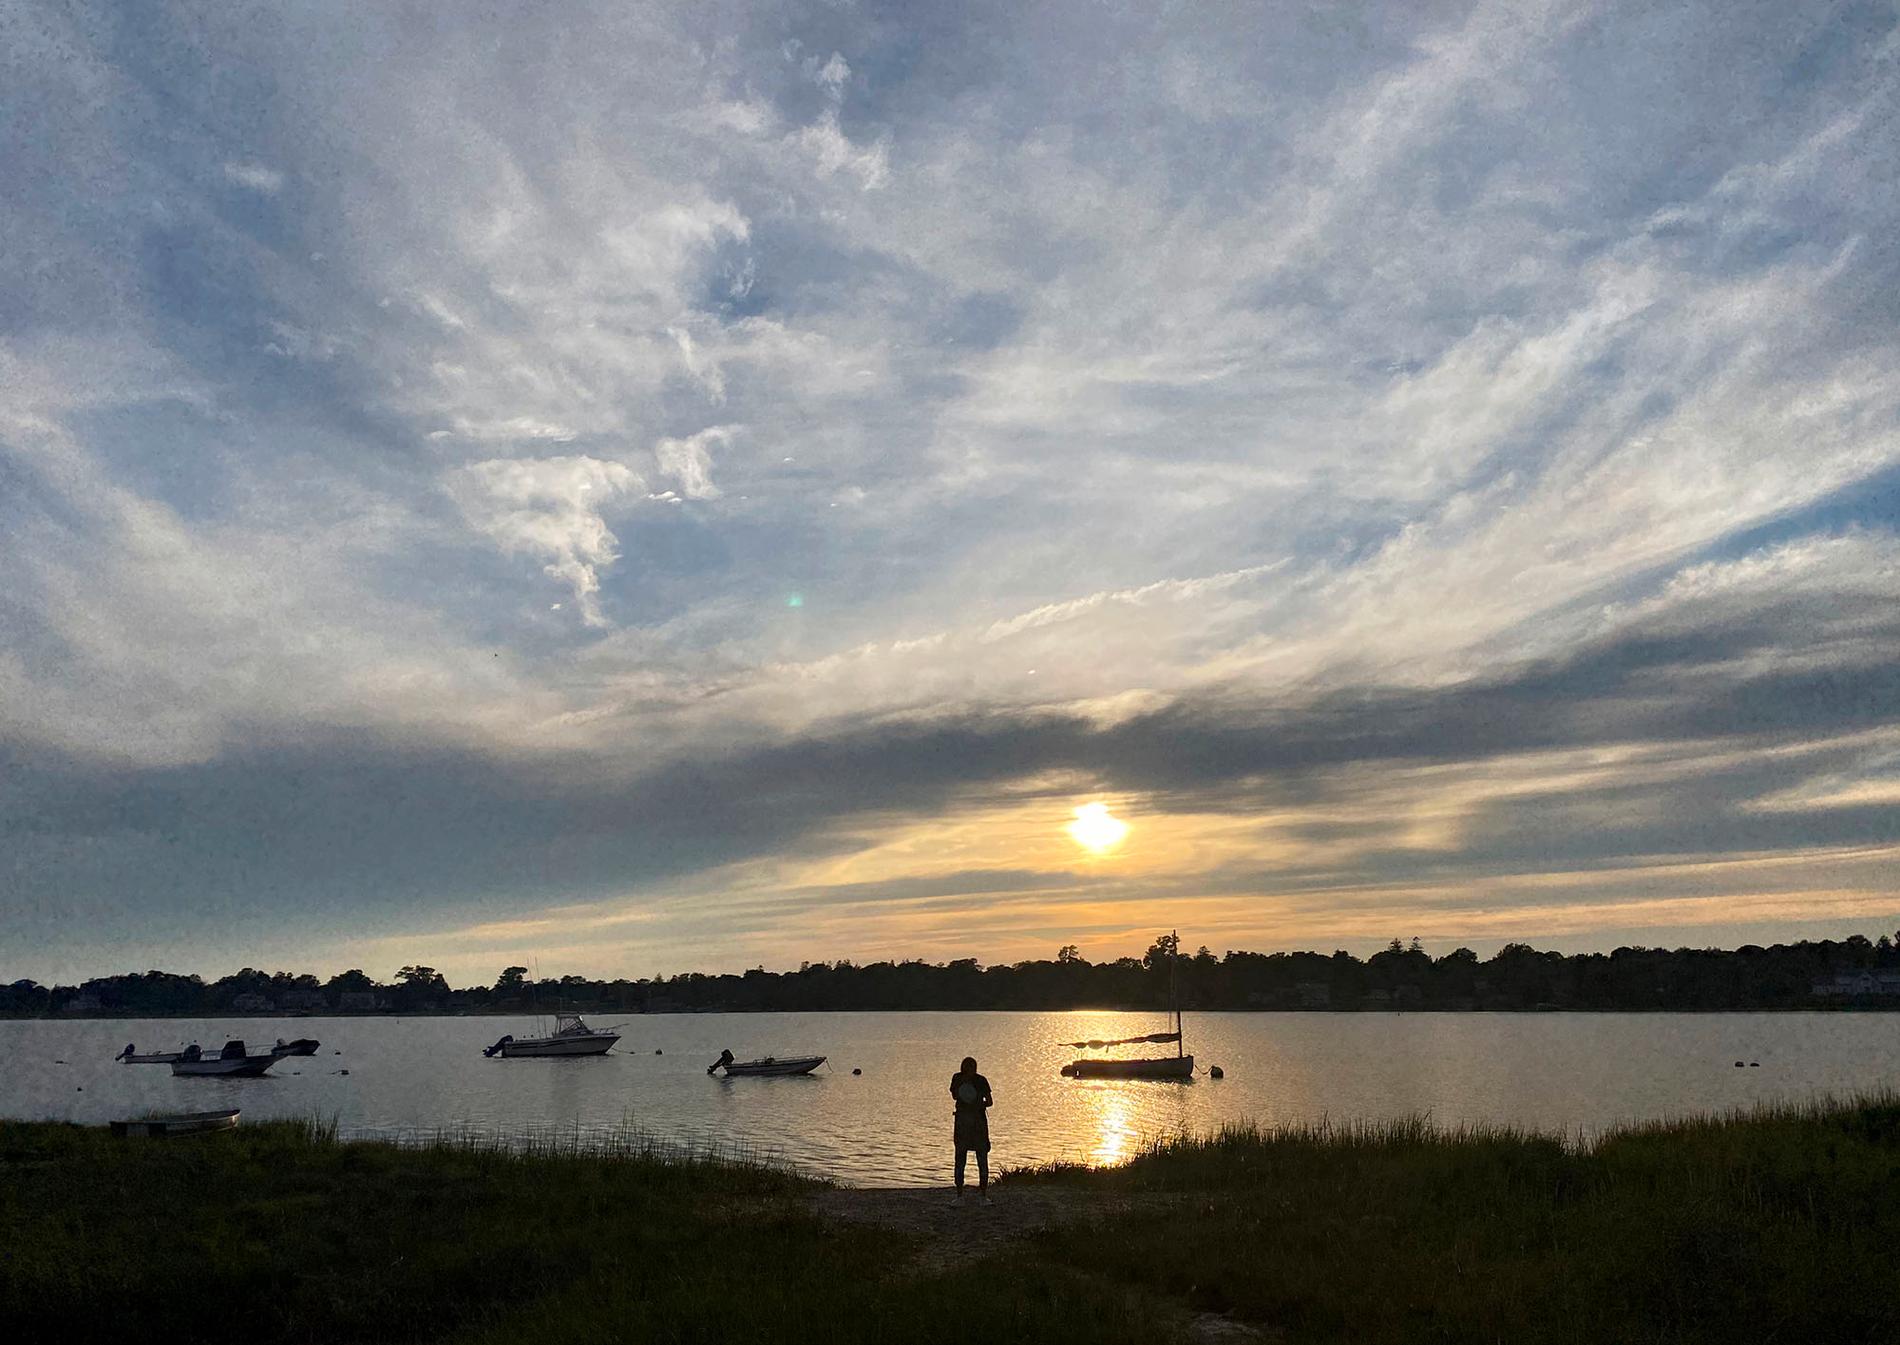 Närhet till utomhusliv lockar många amerikaner som kan jobba på distans. På bilden njuter strövare av solnedgången på halvön Cape Cod i Massachusetts.